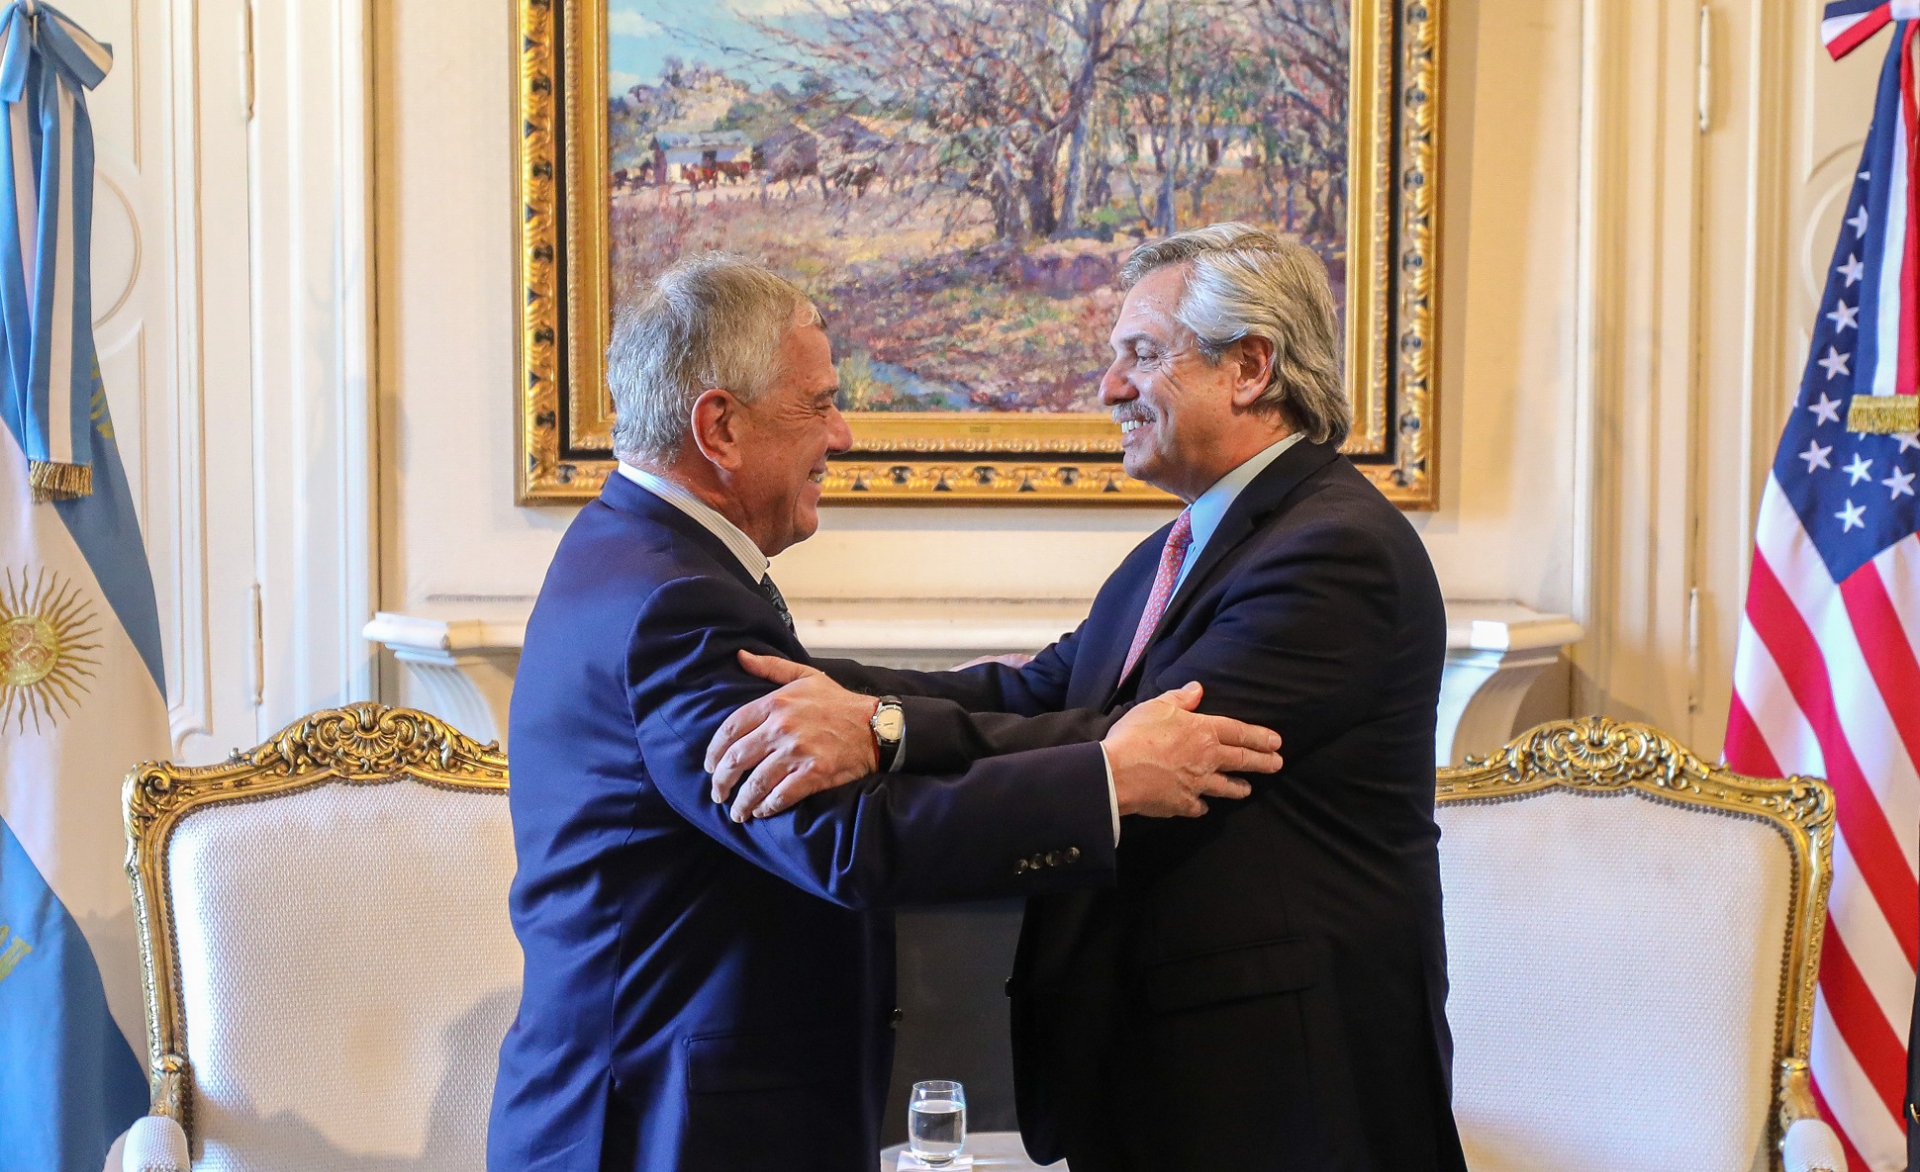 Fernández receives US delegation